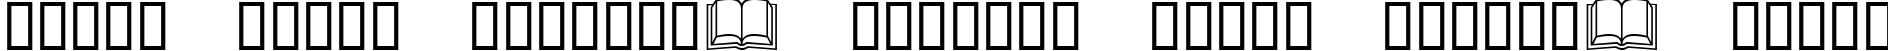 Пример написания шрифтом Lucida Icons текста на белорусском